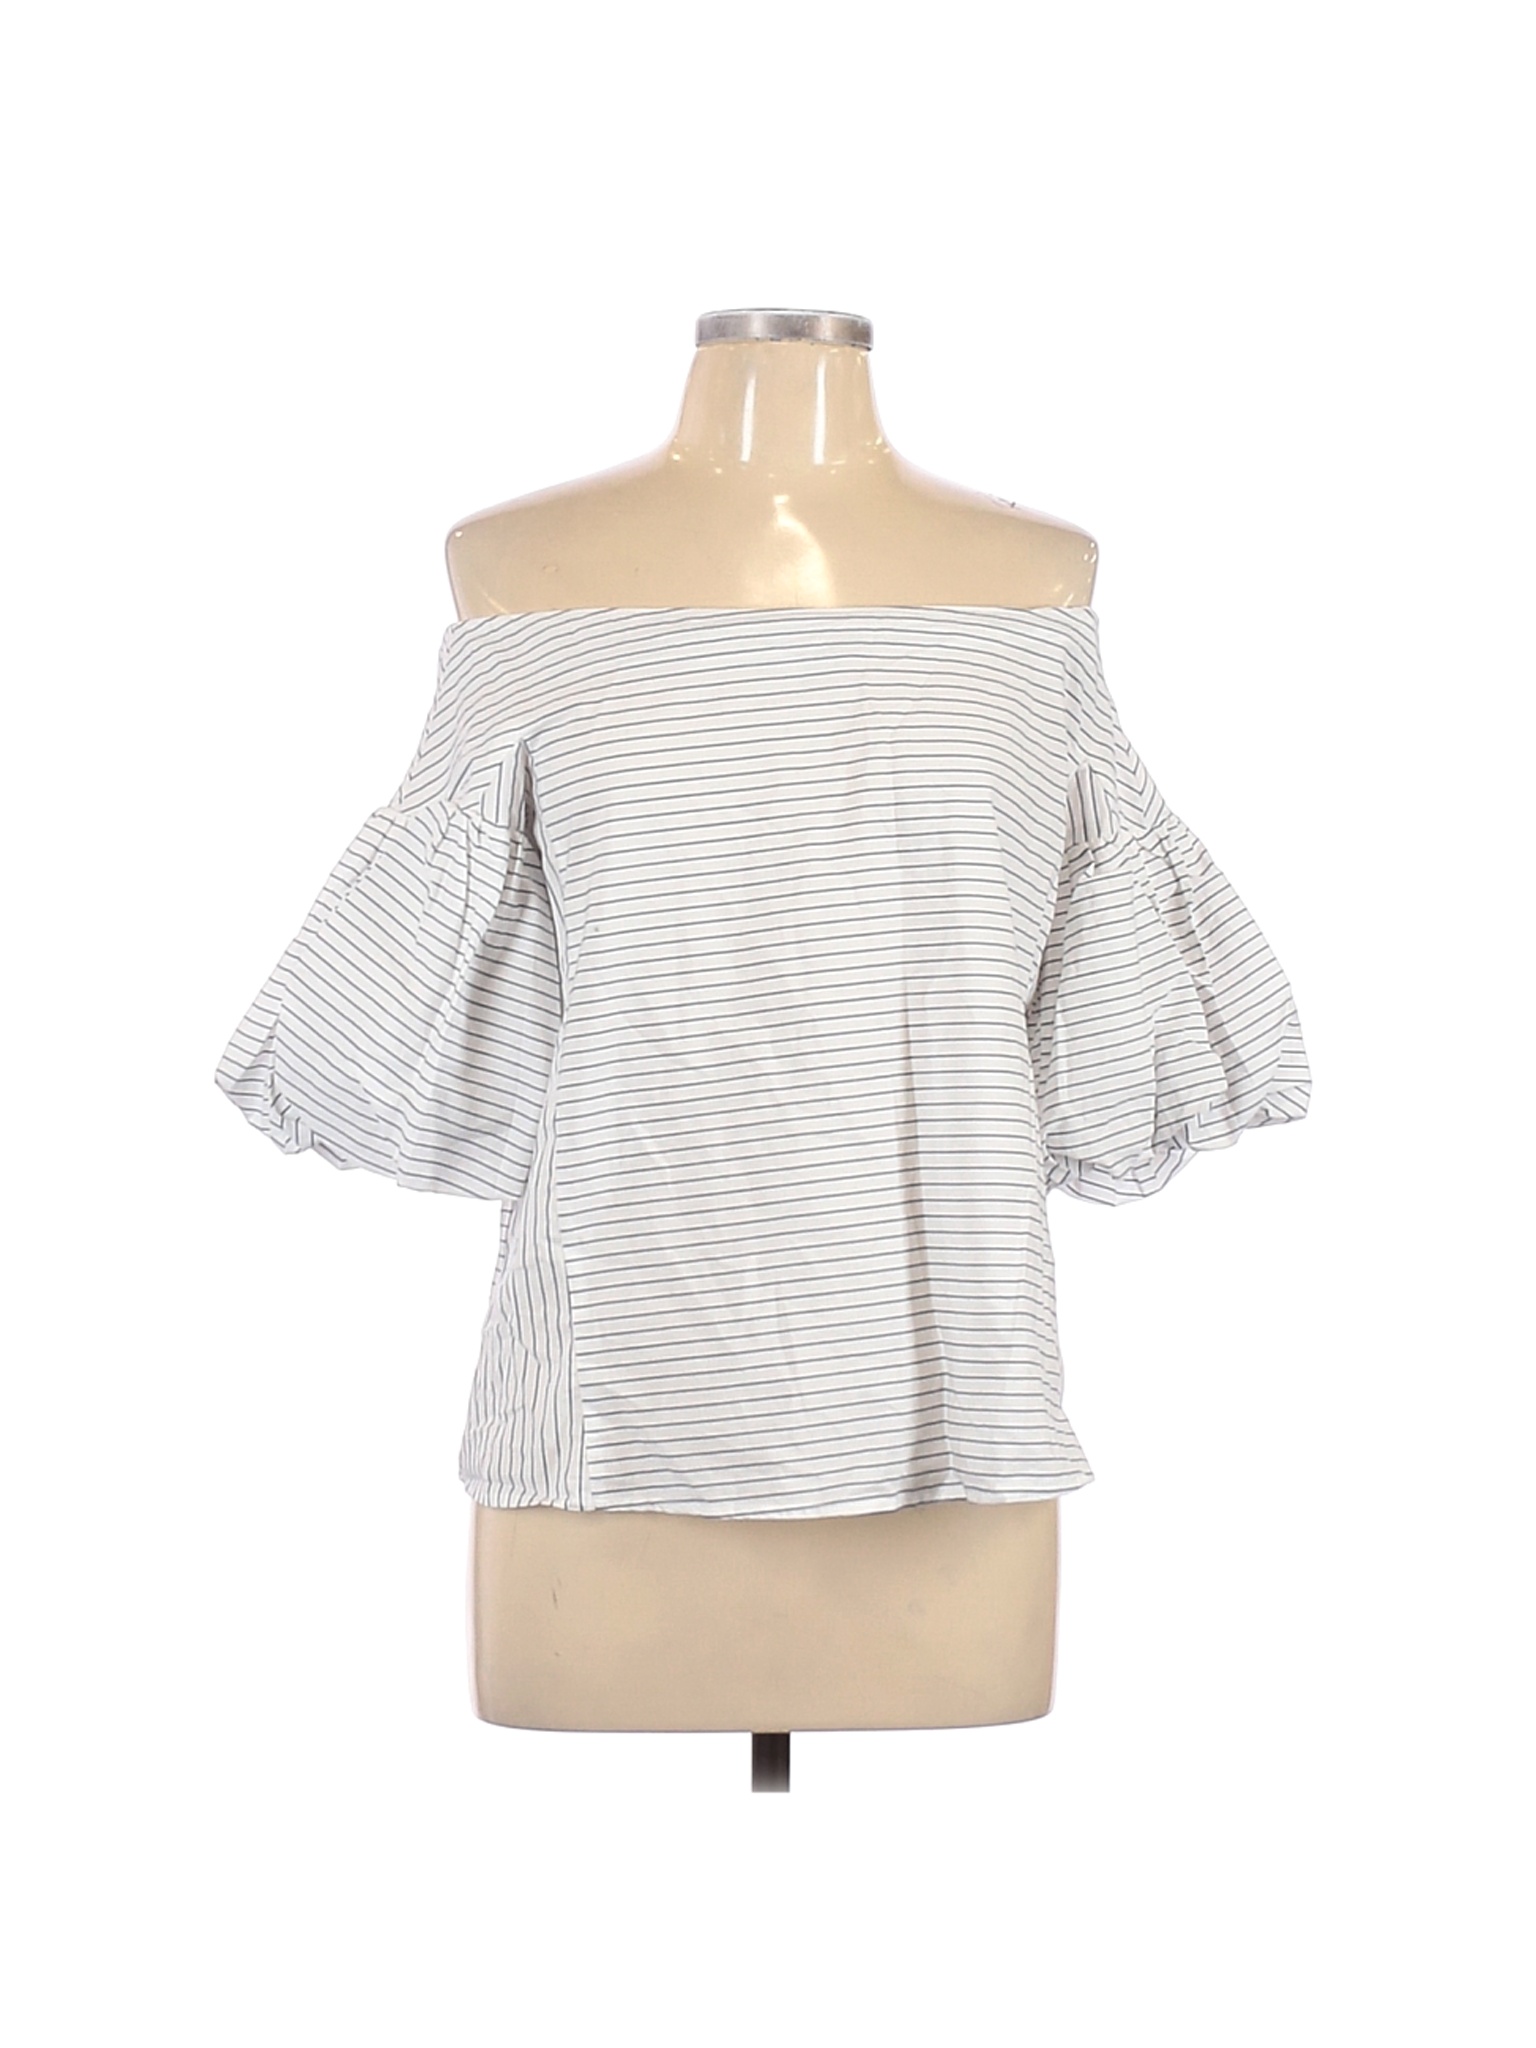 H&M Women White 3/4 Sleeve Blouse 10 | eBay